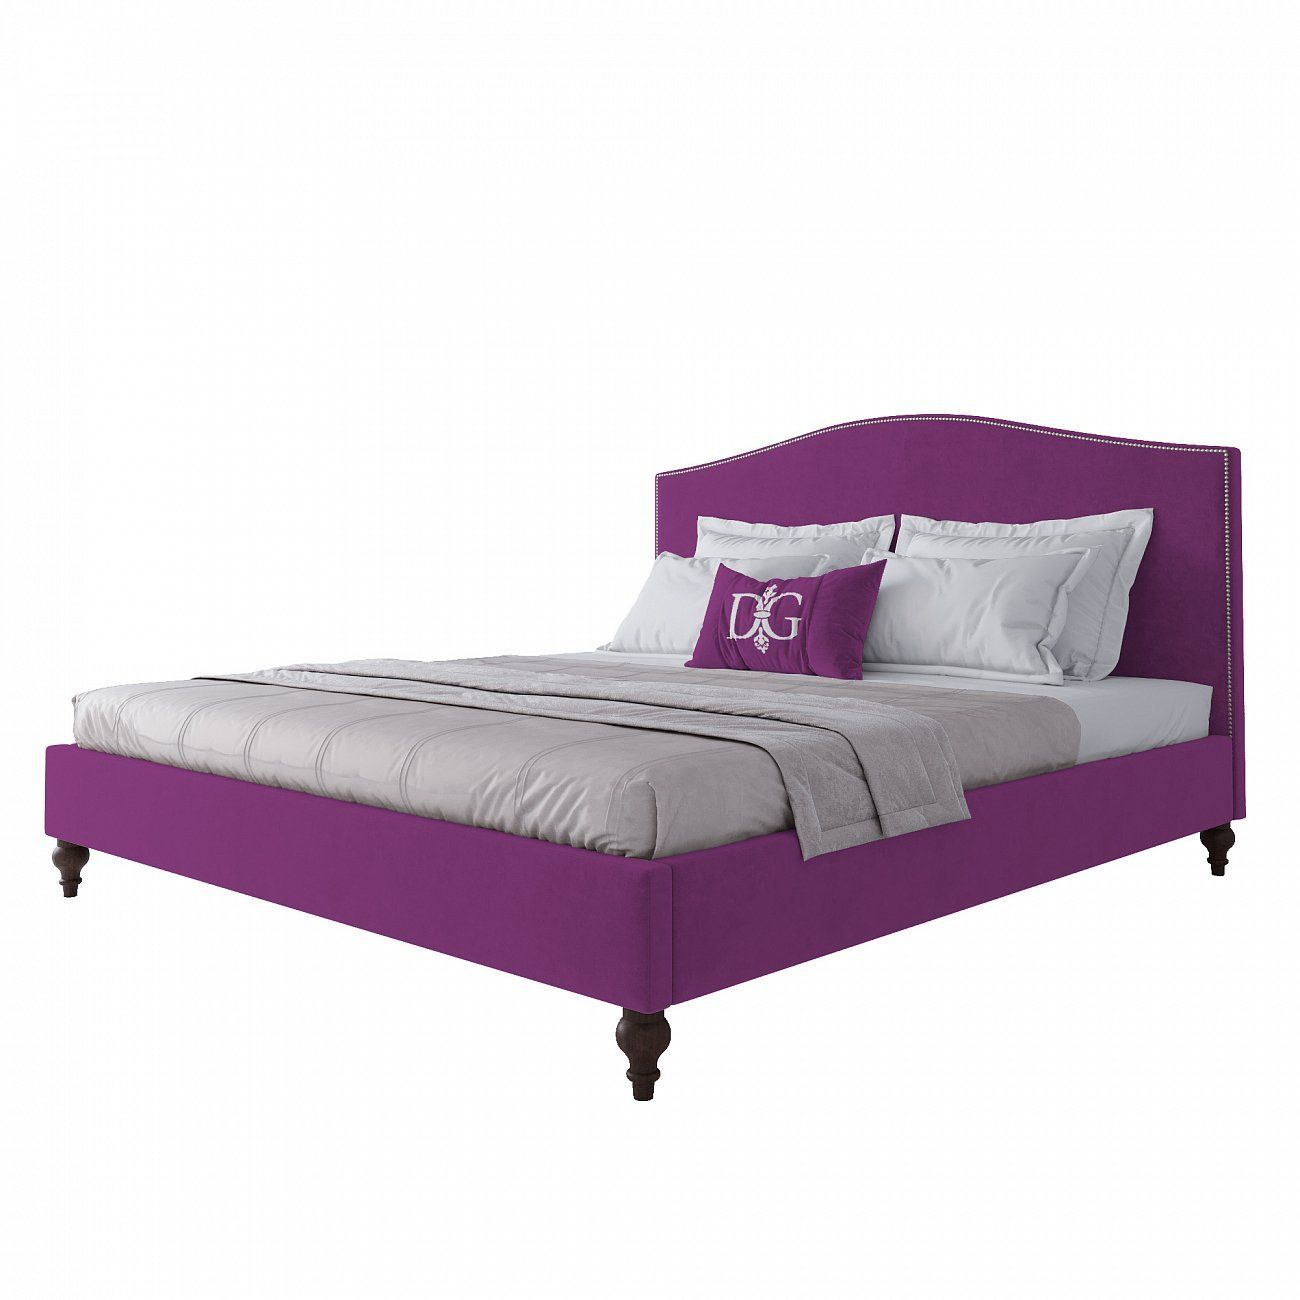 Кровать двуспальная 180х200 см фиолетовая Fleurie